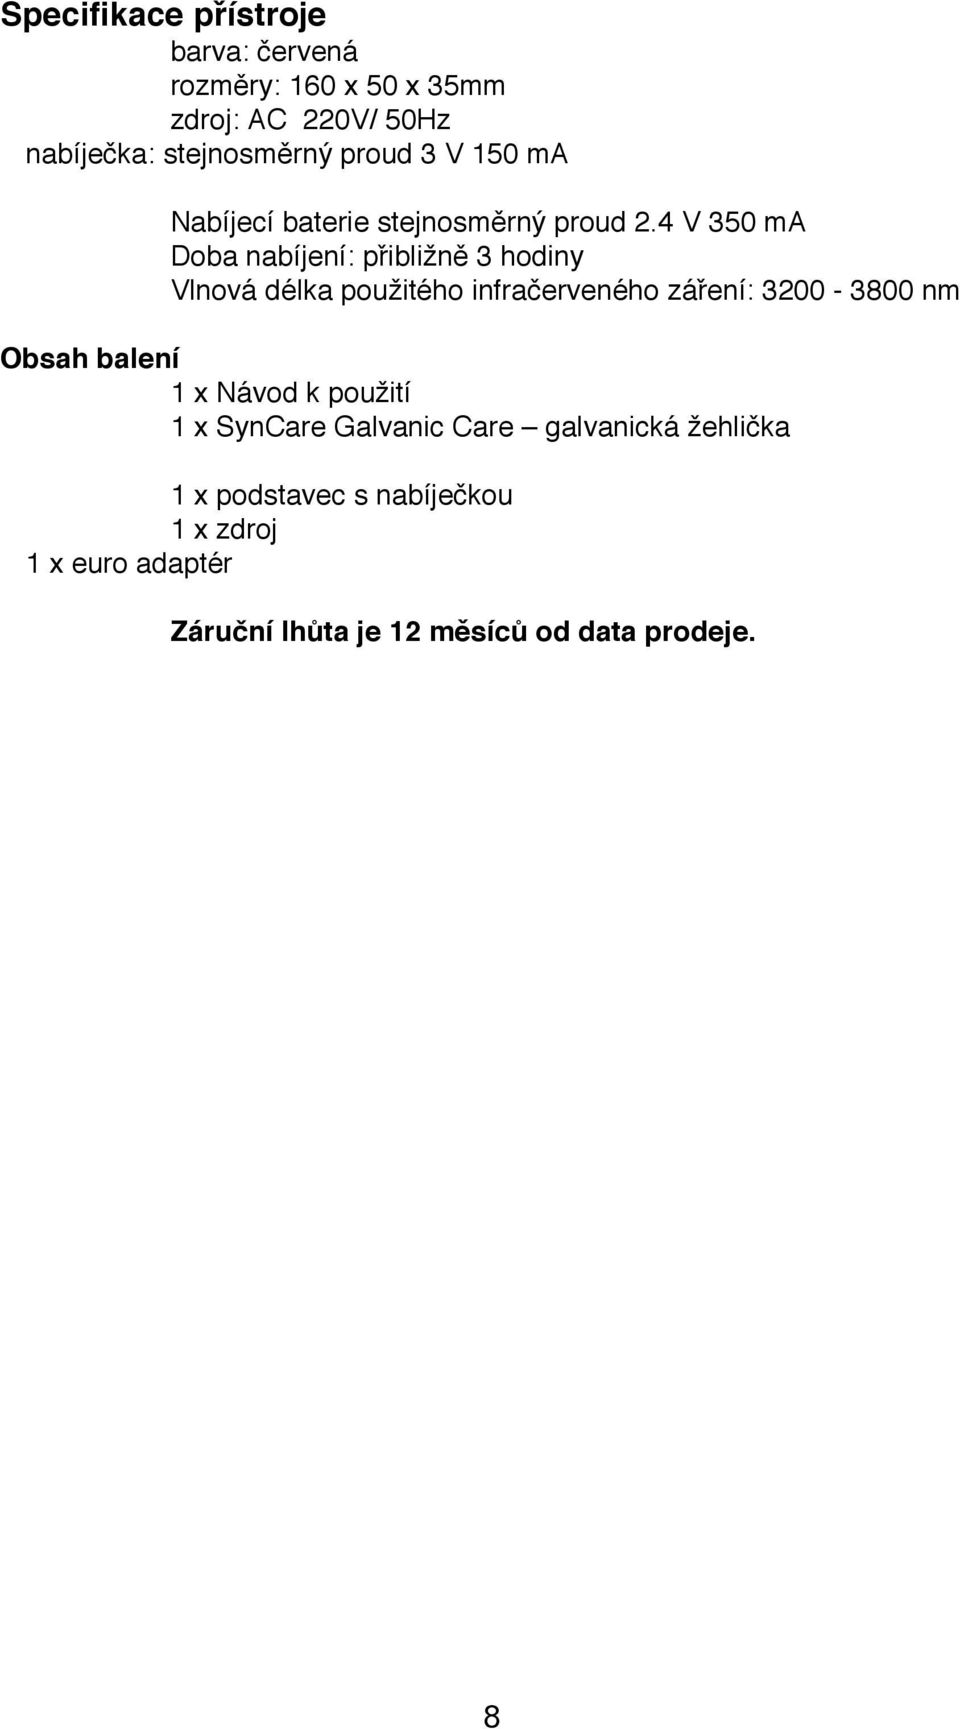 Návod k použití přístroje SynCare Galvanic Care - PDF Stažení zdarma